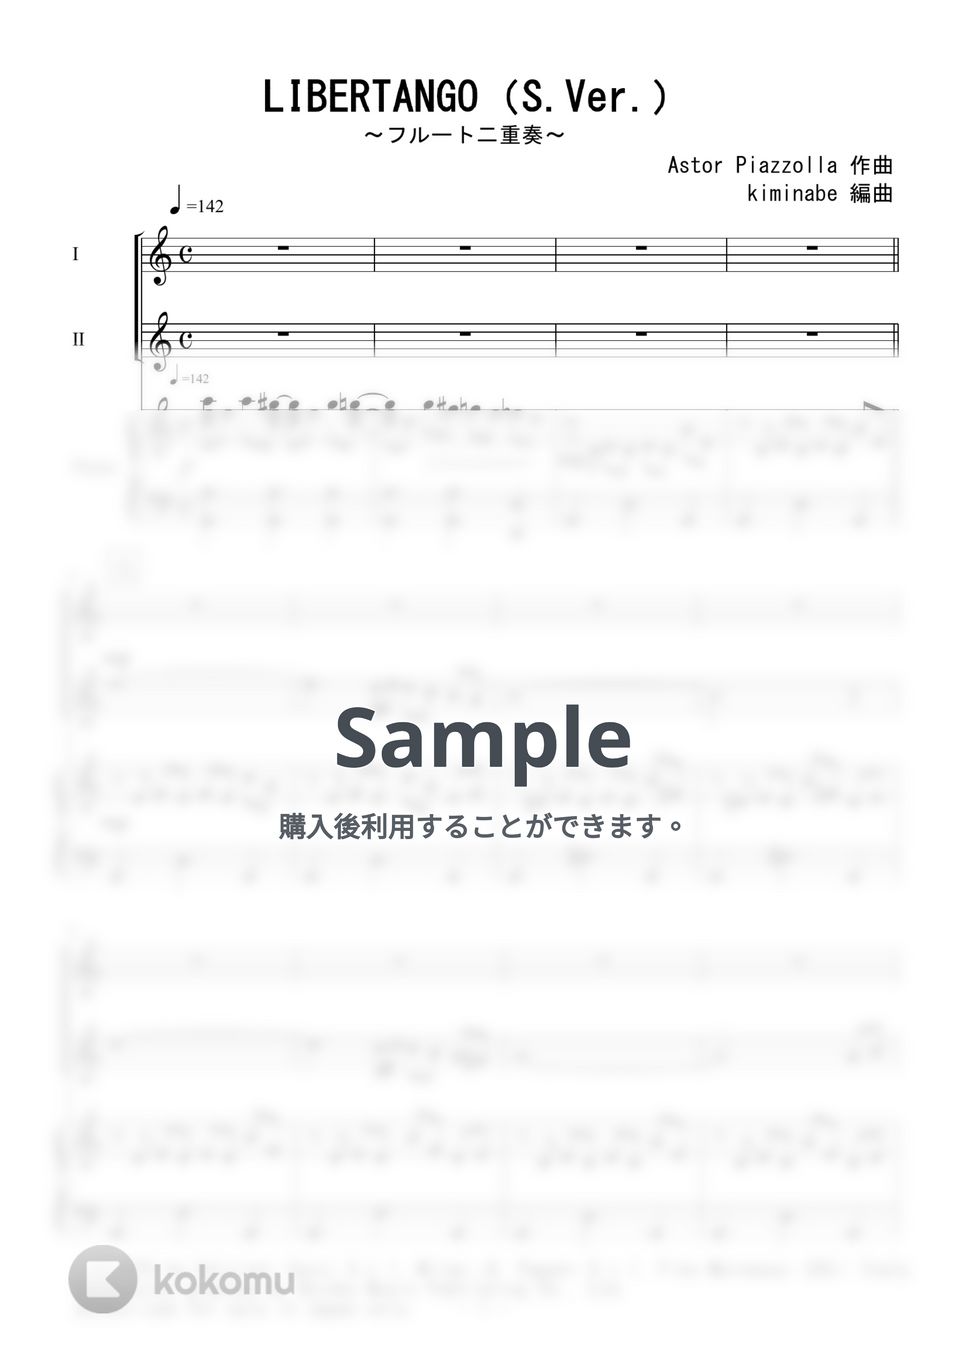 ピアソラ - LIBERTANGO (フルート二重奏／SV.) by kiminabe